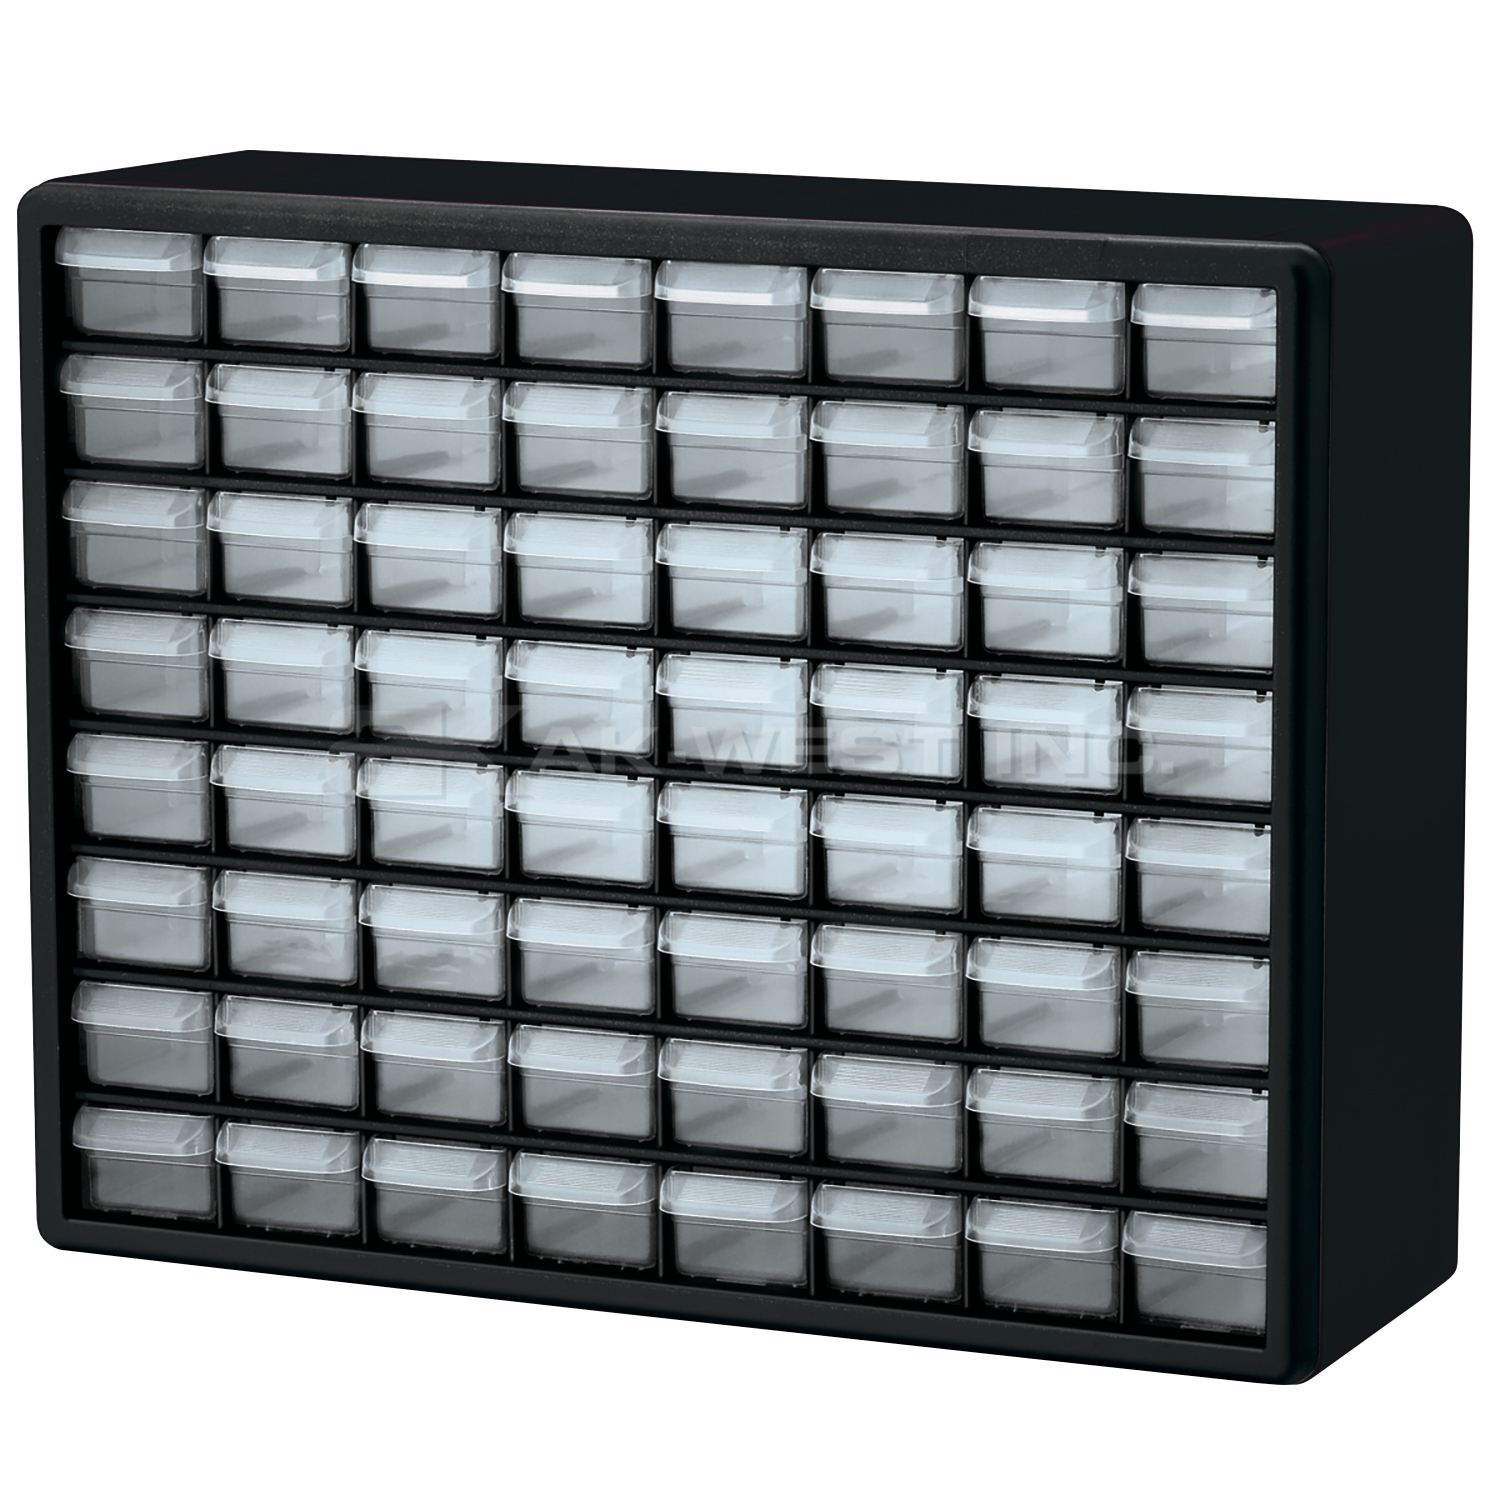 Black, 20" x 6-3/8" x 15-13/16" Plastic Storage Cabinet w/ 64 Drawers - Drawer Size 6" x 2-7/32" x 1-9/16"